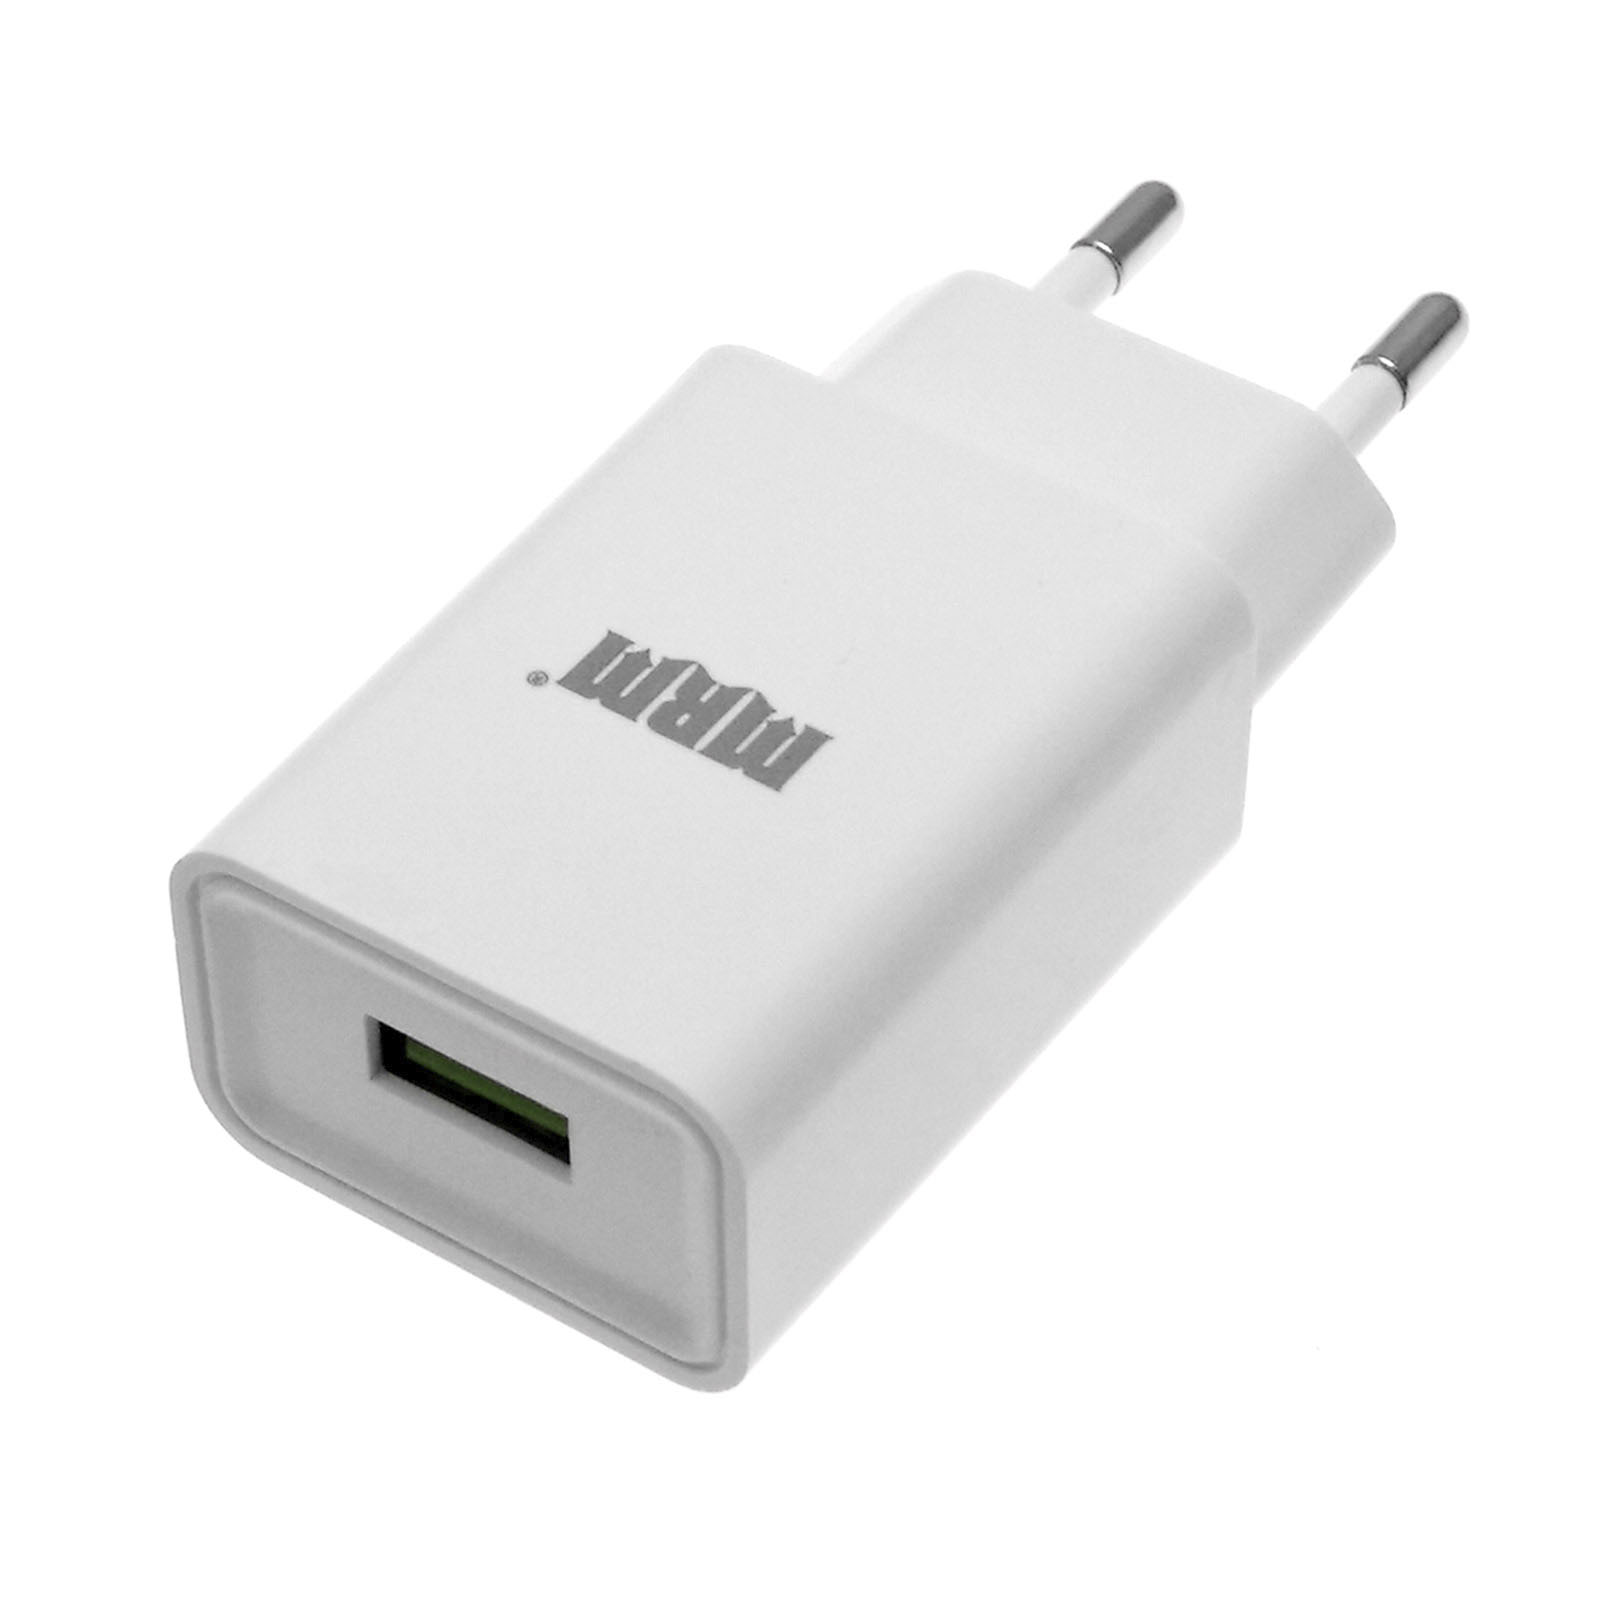 СЗУ (Сетевое зарядное устройство) MRM MR21, 2.1A, 1 USB, цвет белый